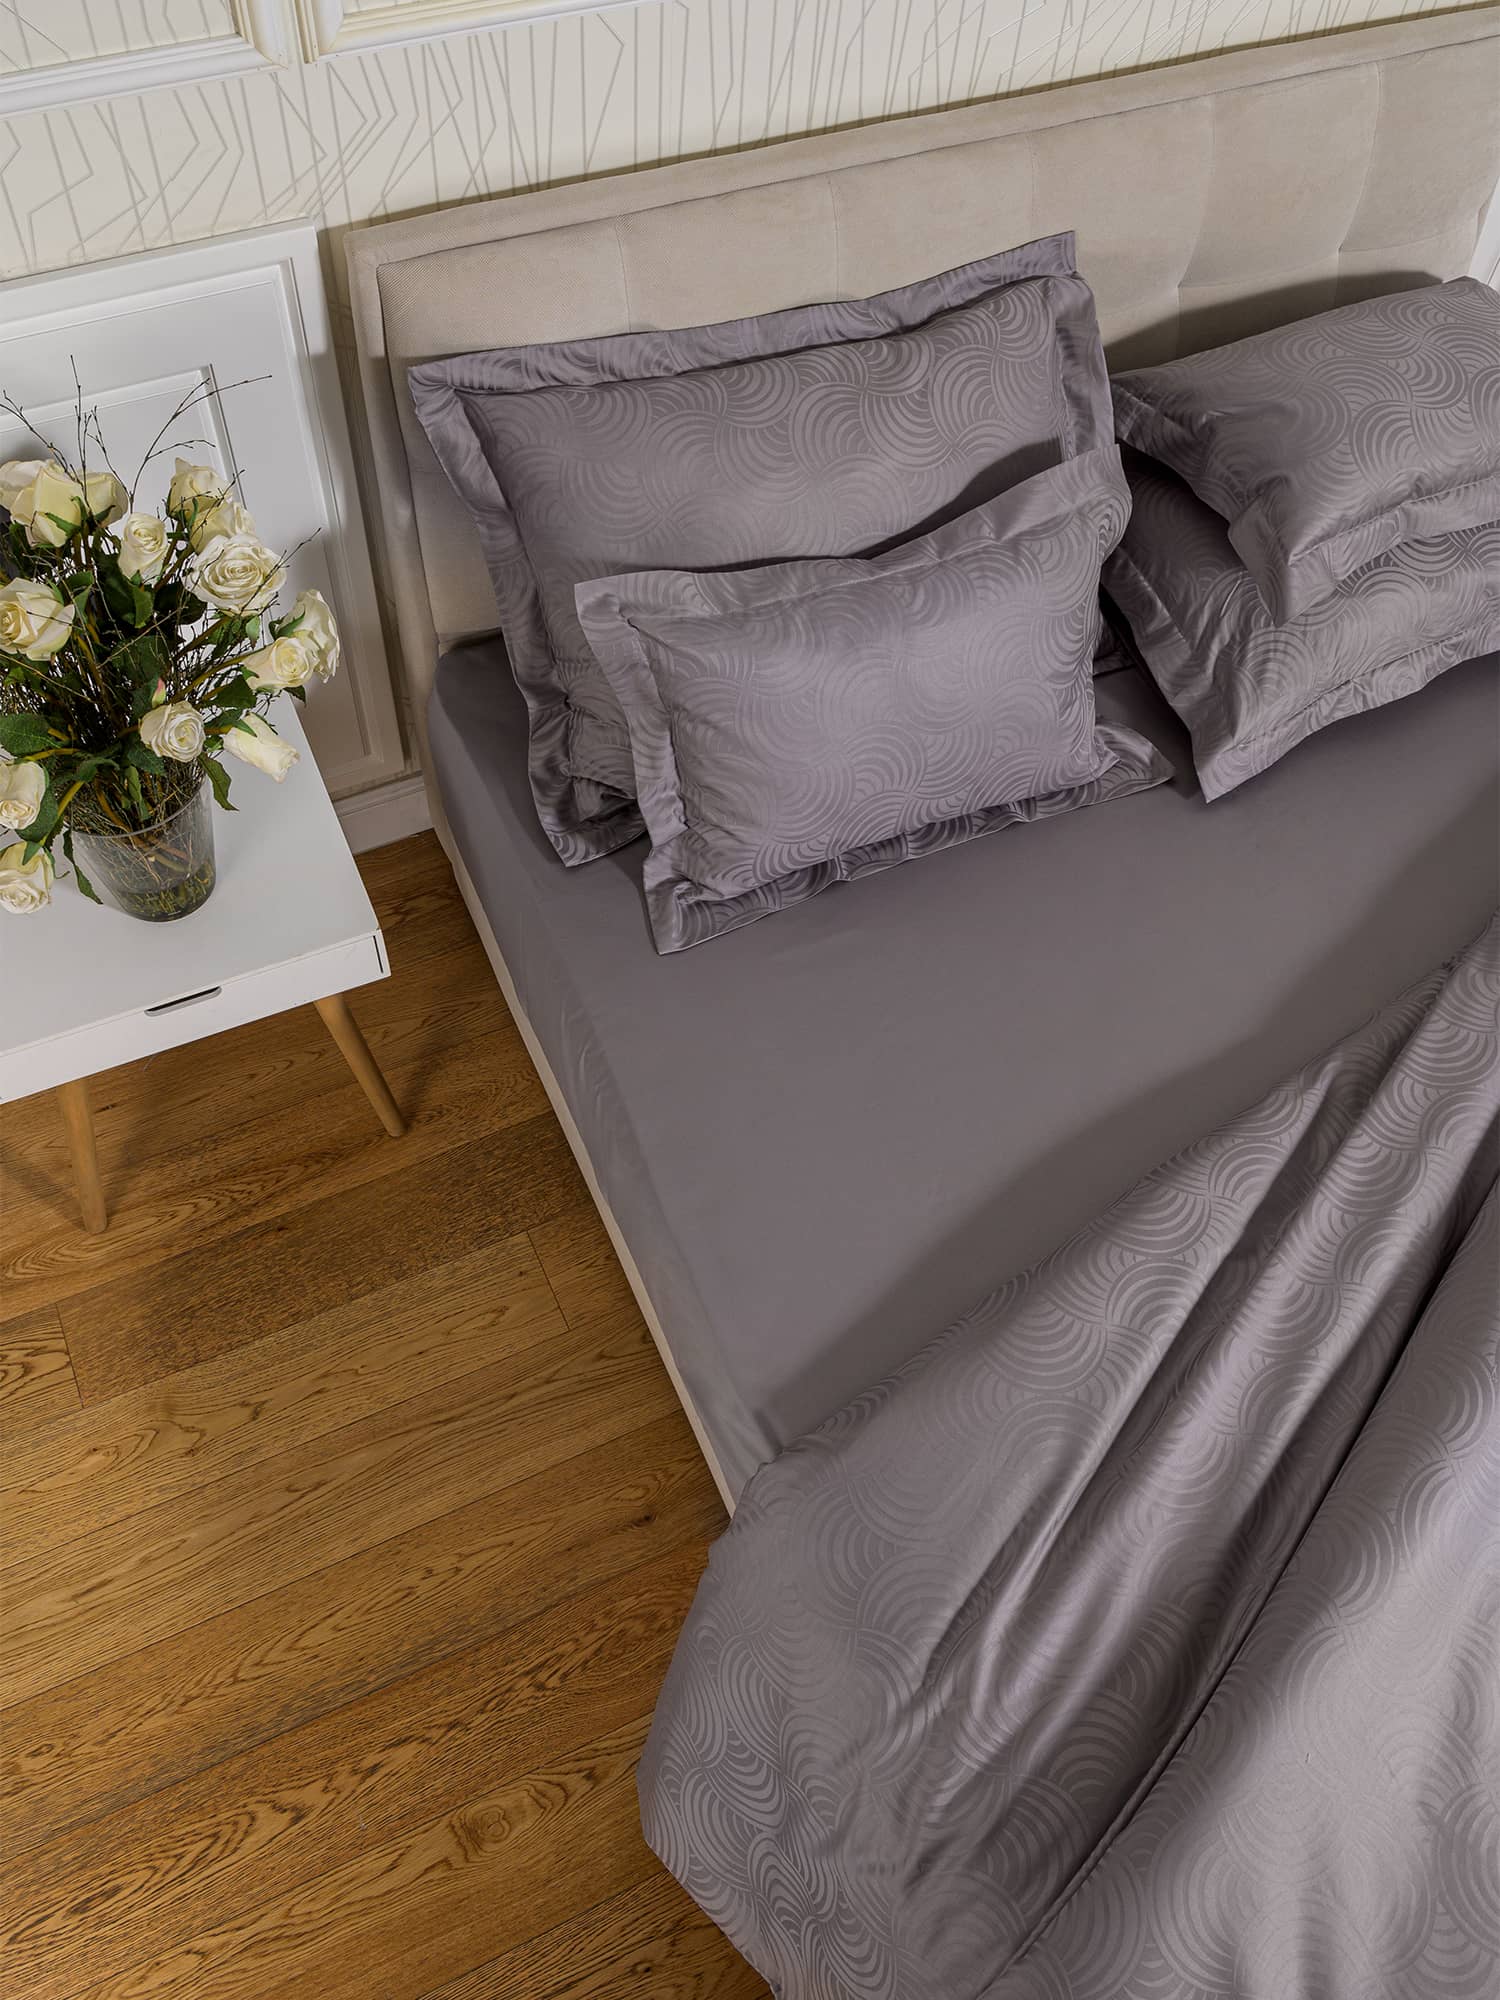 posteljina siva smeđa tamna čelik boja plahta navlaka jastučnica damast 100 posto pamuk 160x200